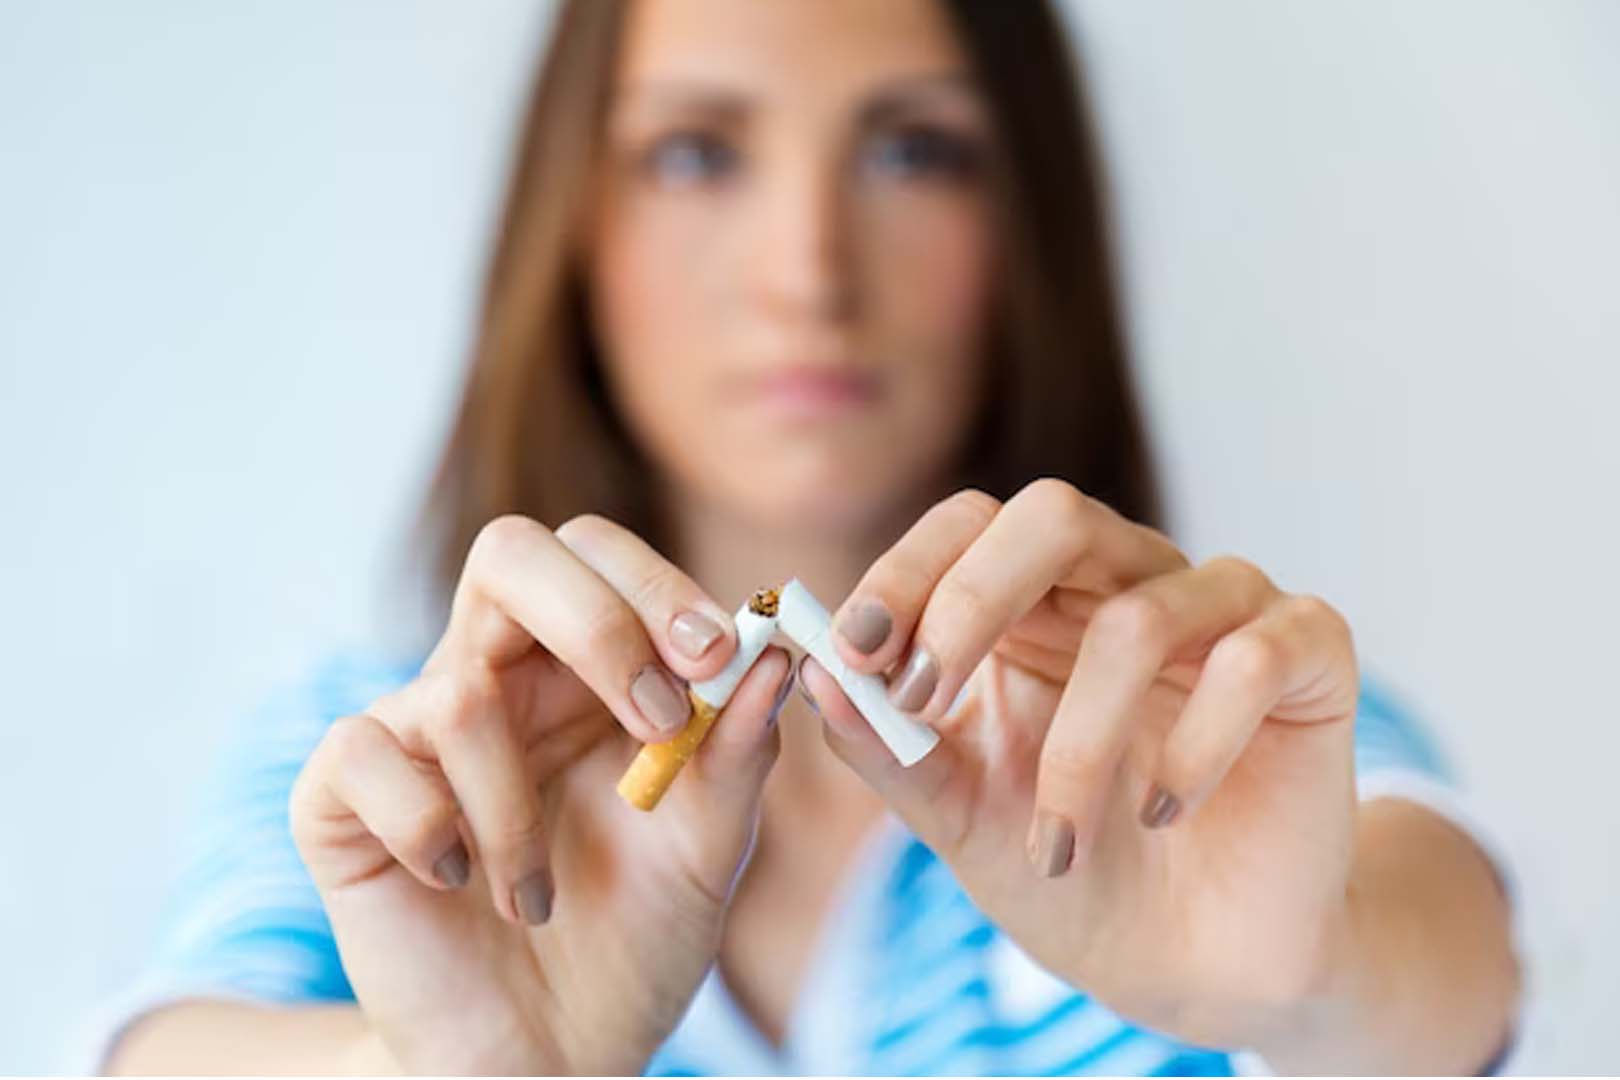 Bahaya Kecanduan Tembakau! Berikut 7 Cara Berhenti Merokok